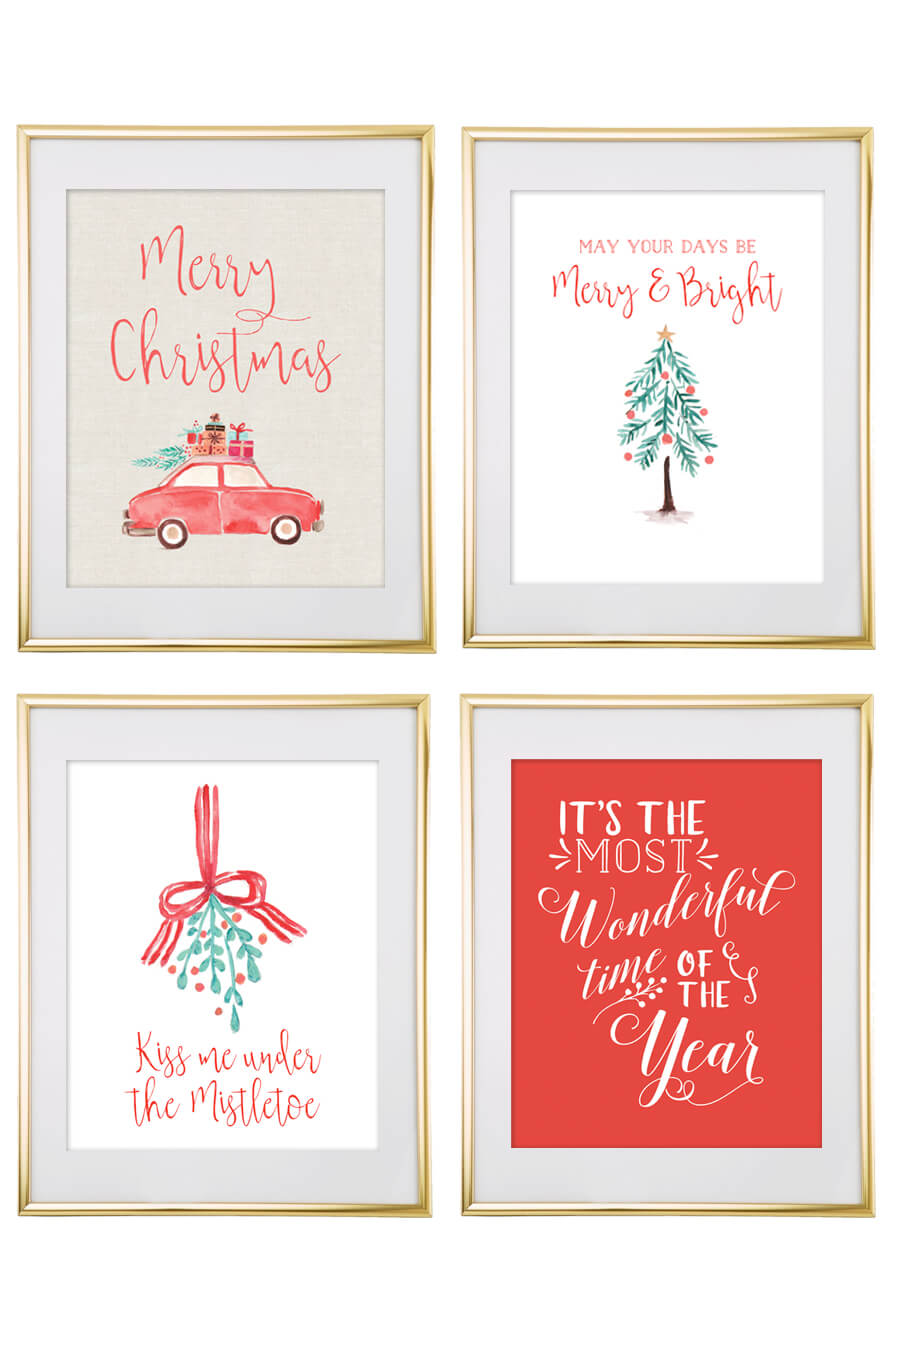 Christmas Images Printable Free Printable Templates